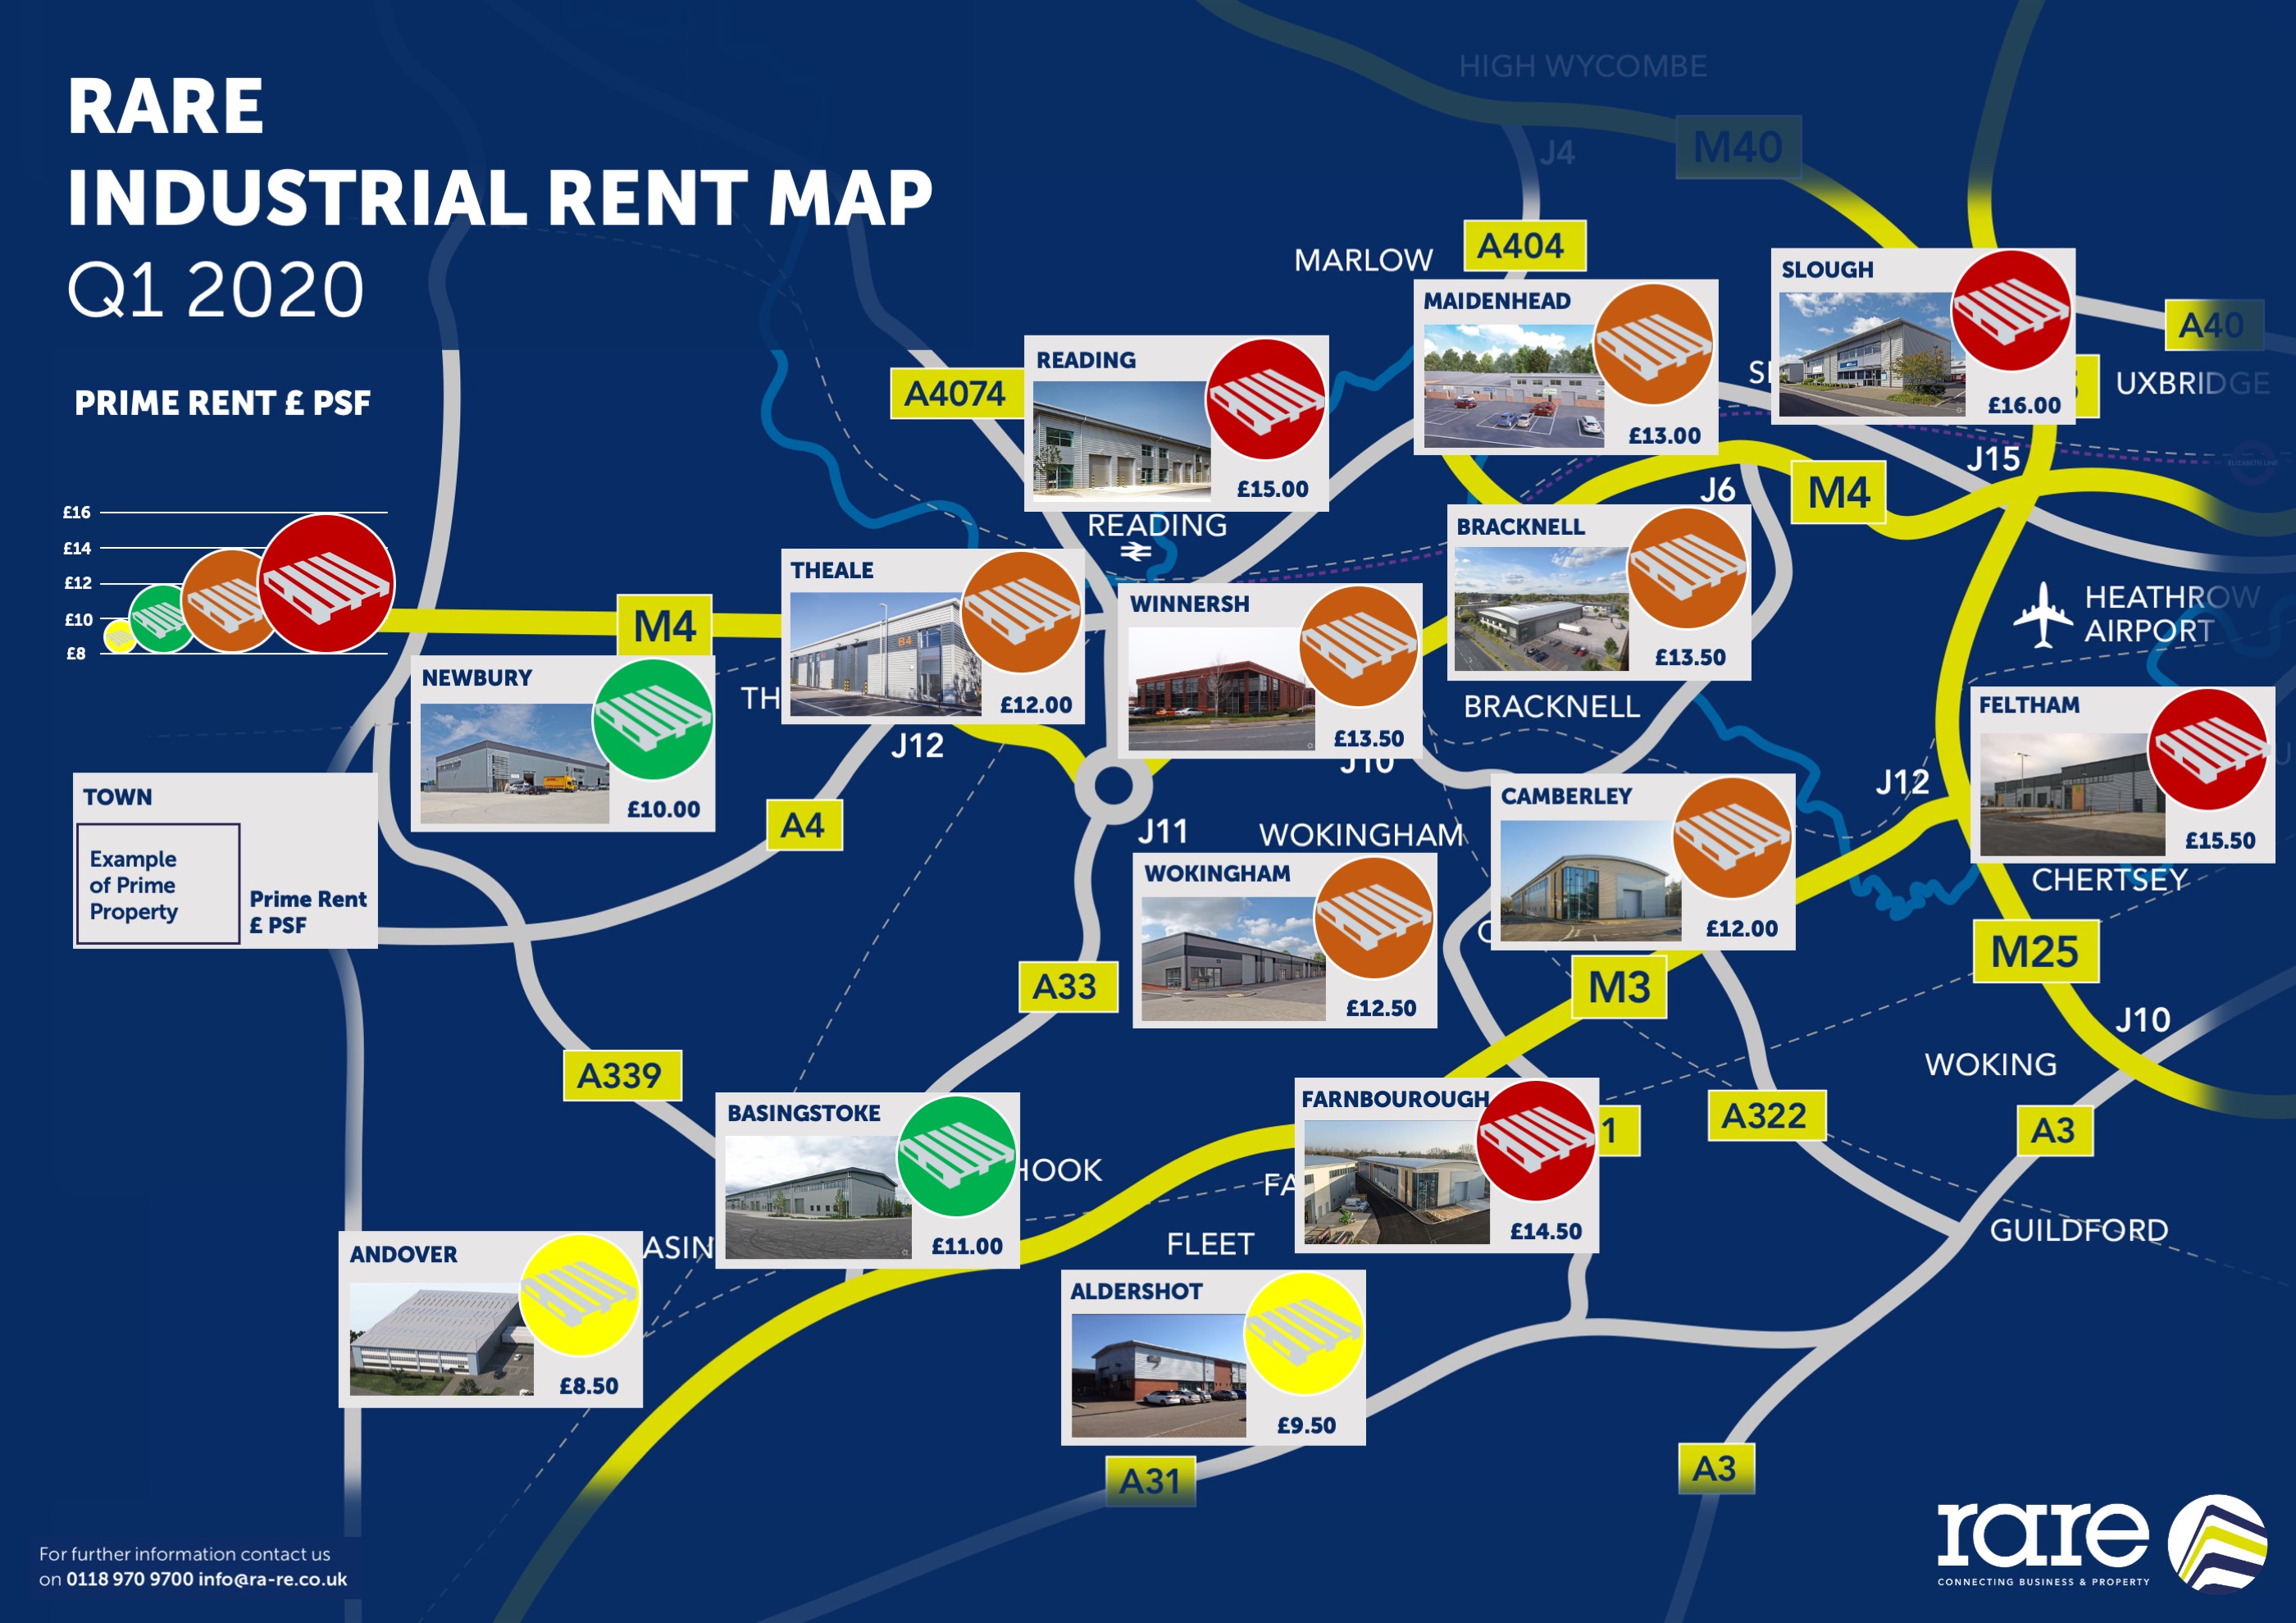 RARE Industrial Rent Map Q1 2020